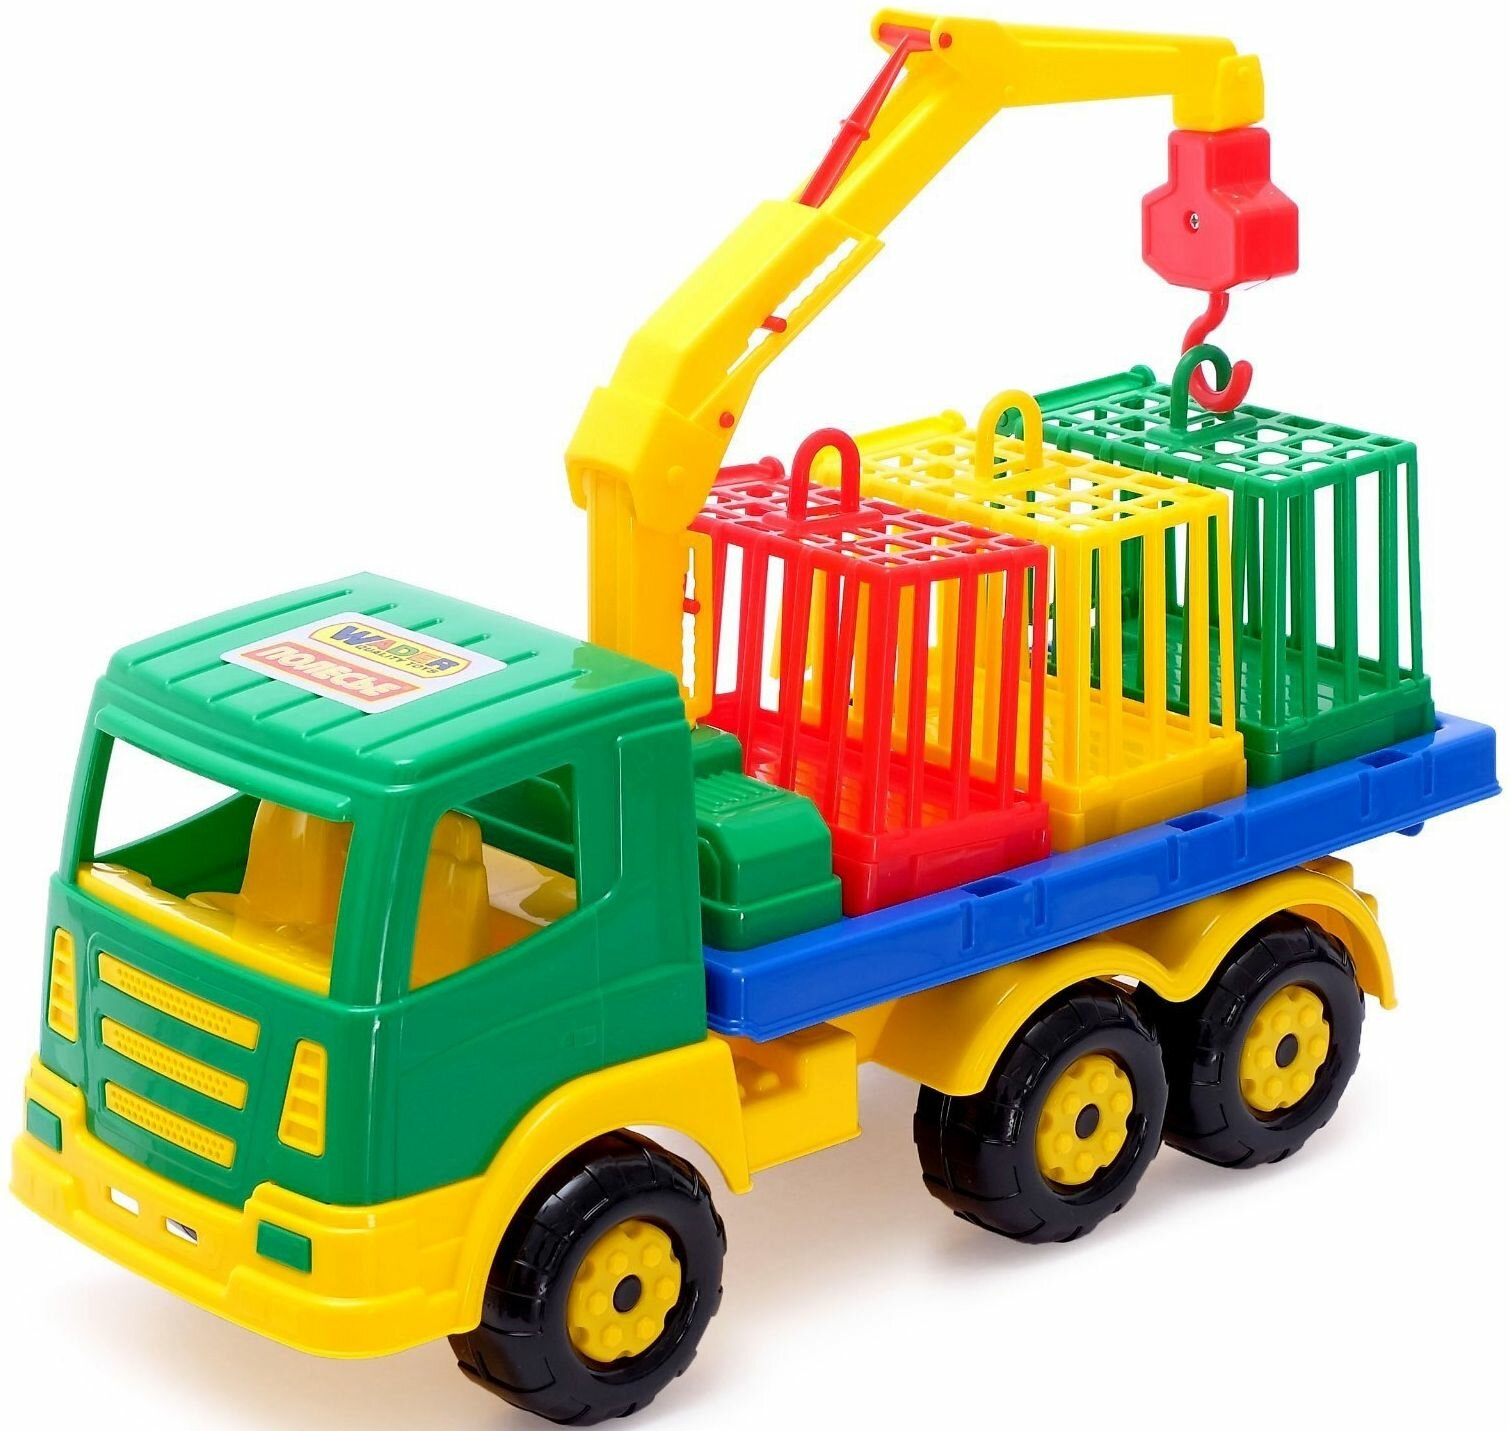 Автомобиль для перевозки зверей "Престиж", игрушечная машинка для детей, пластиковая игрушка для песочницы и дома, цвет микс